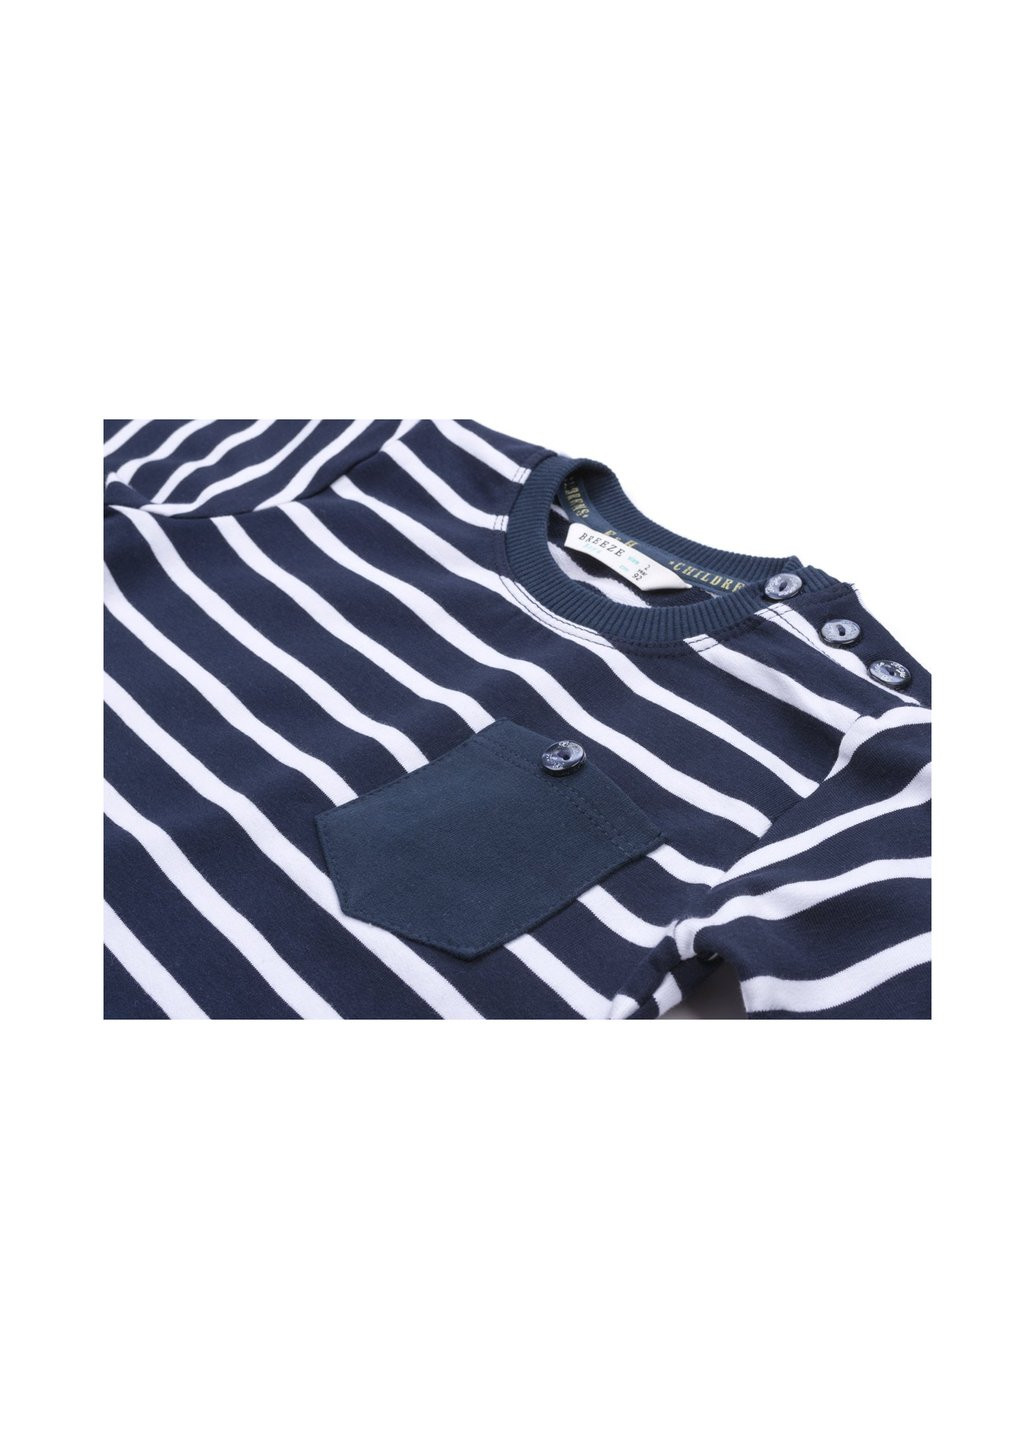 Комбинированный демисезонный набор детской одежды в полосочку и с карманчиком (8999-68b-darkblue) Breeze